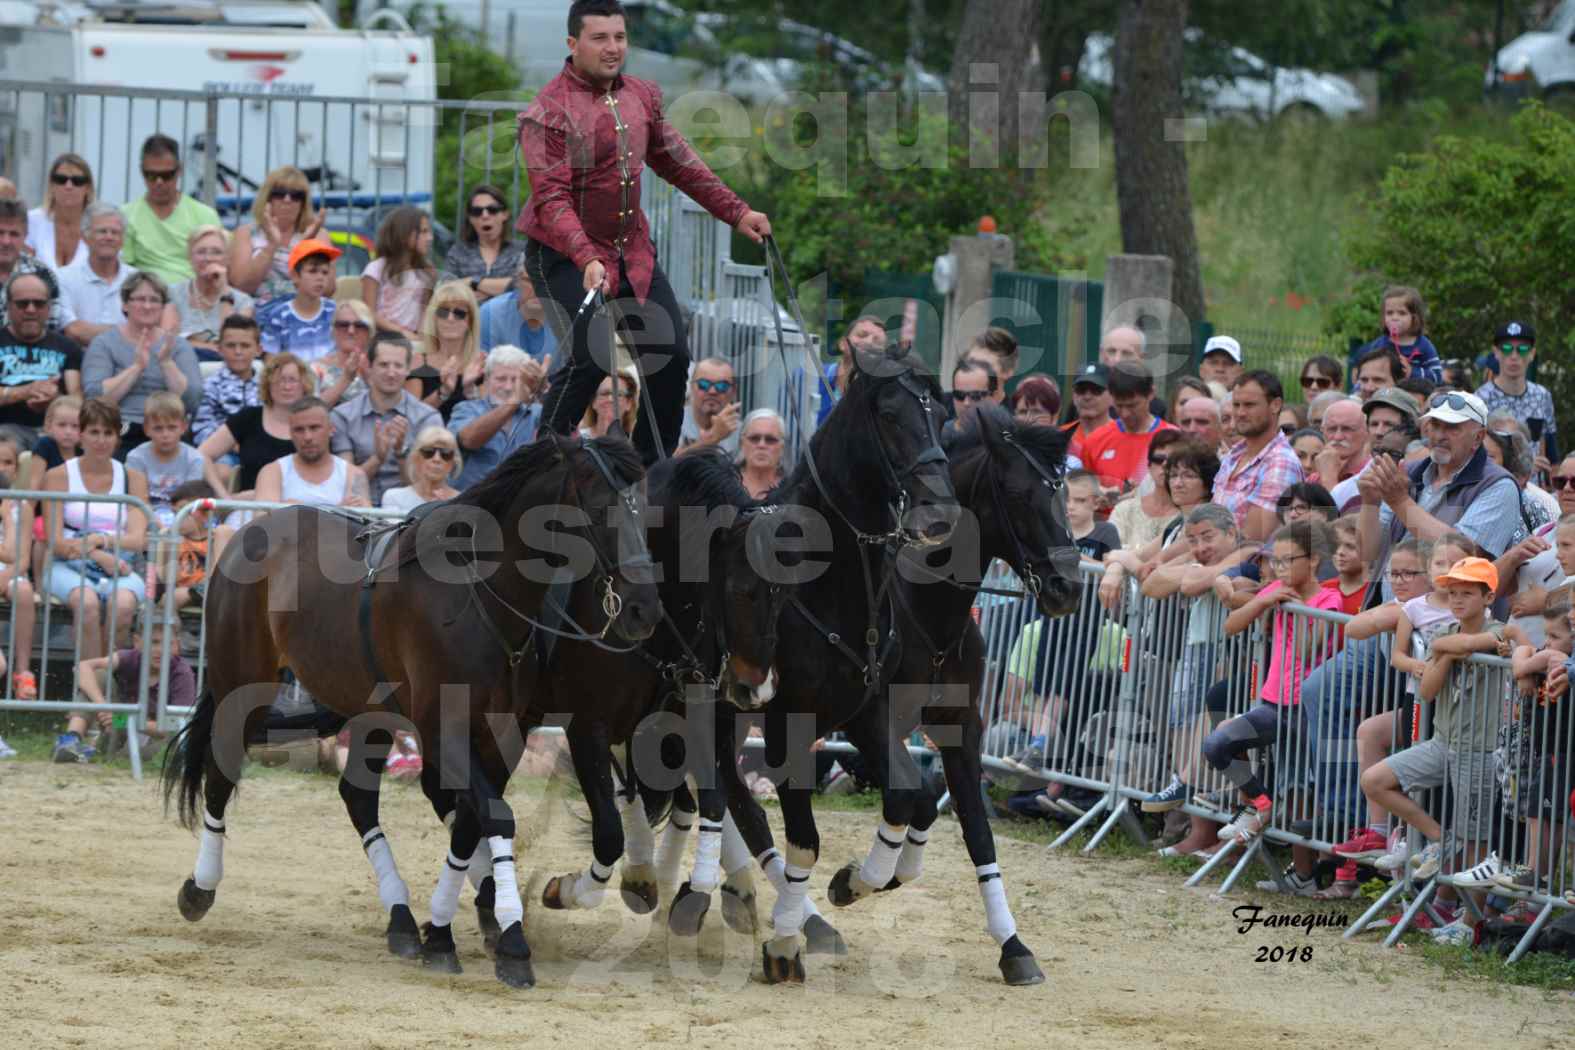 Spectacle Équestre le 3 juin 2018 à Saint Gély du Fesc - Poste Hongroise de 2 à 6 chevaux - Benoît SOUMILLE - 2